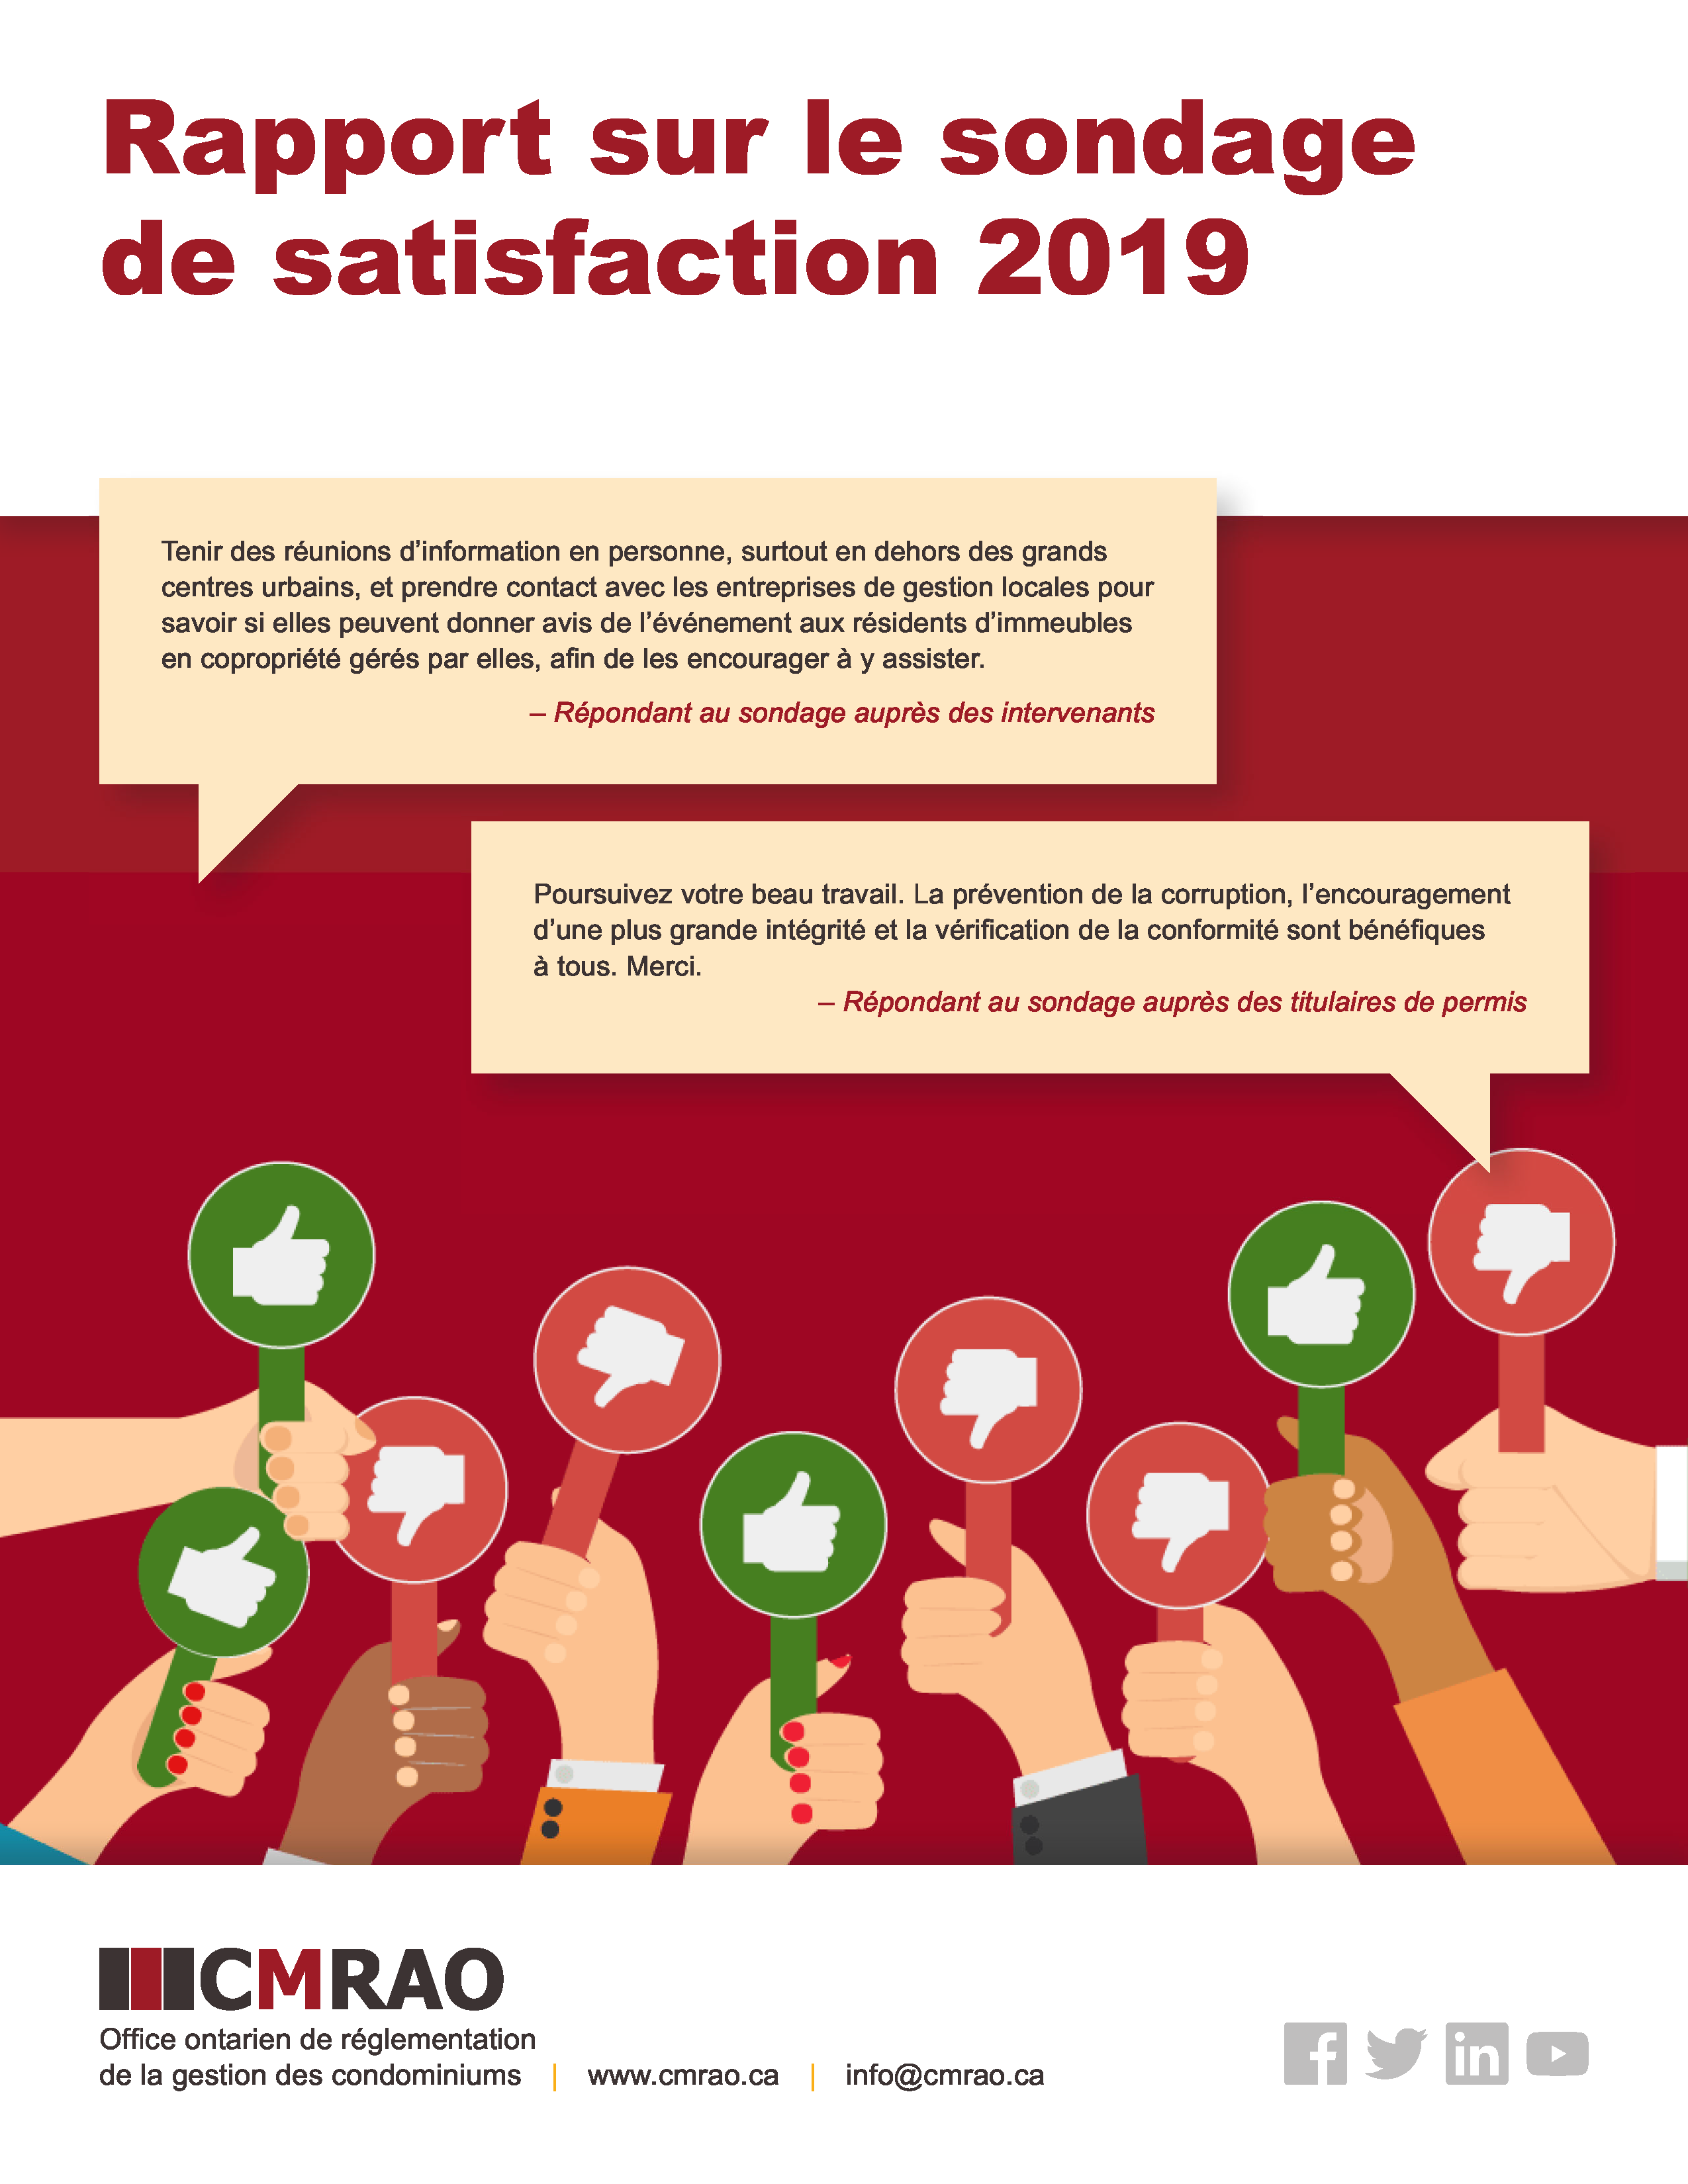 Rapport sur le sondage de satisfaction 2019